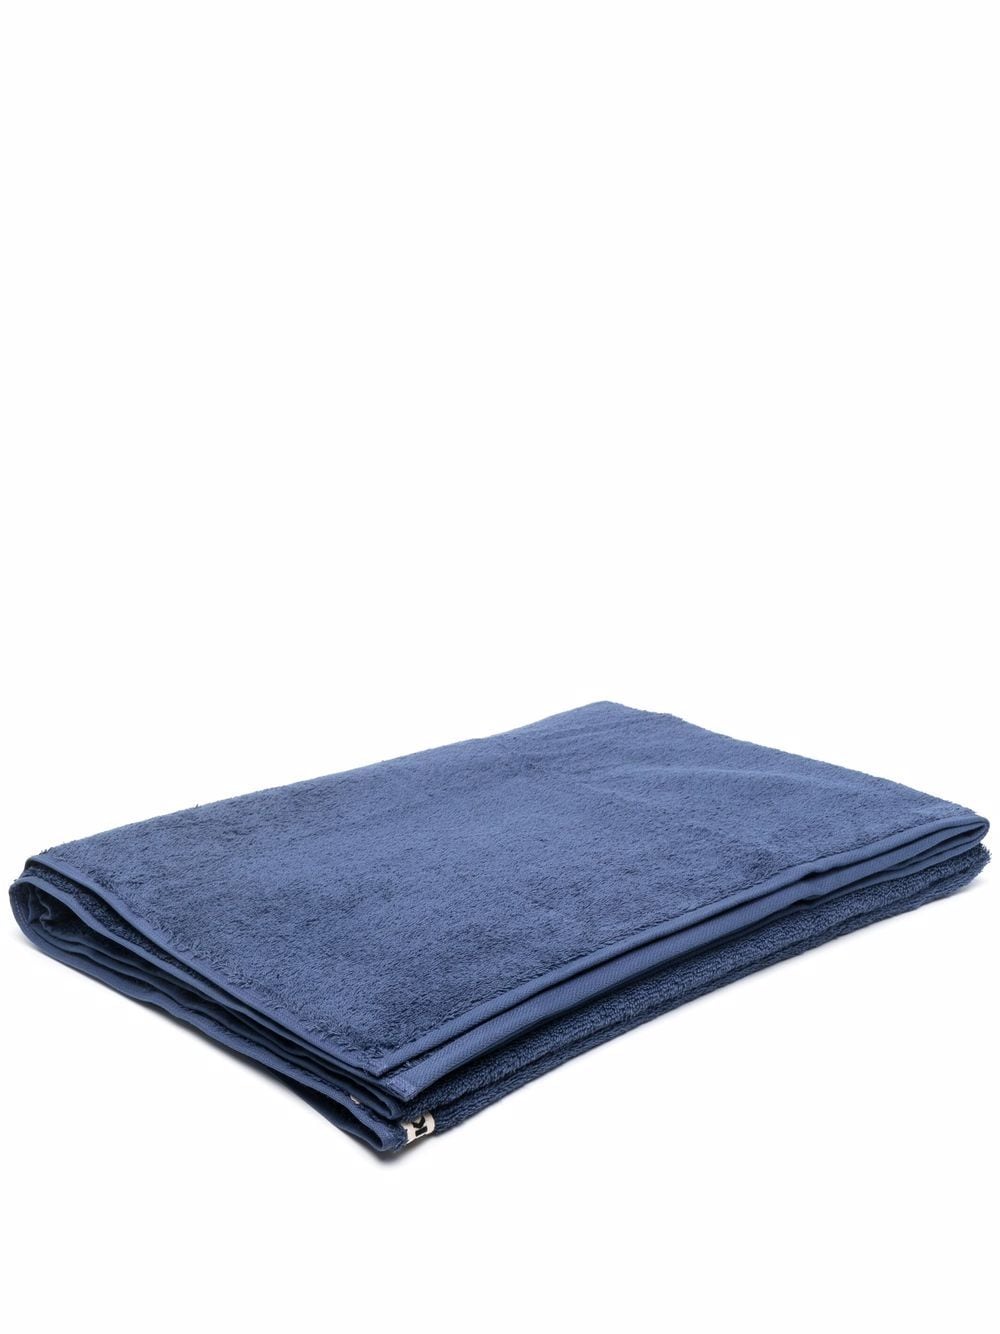 TEKLA logo patch organic cotton towel - Blue von TEKLA